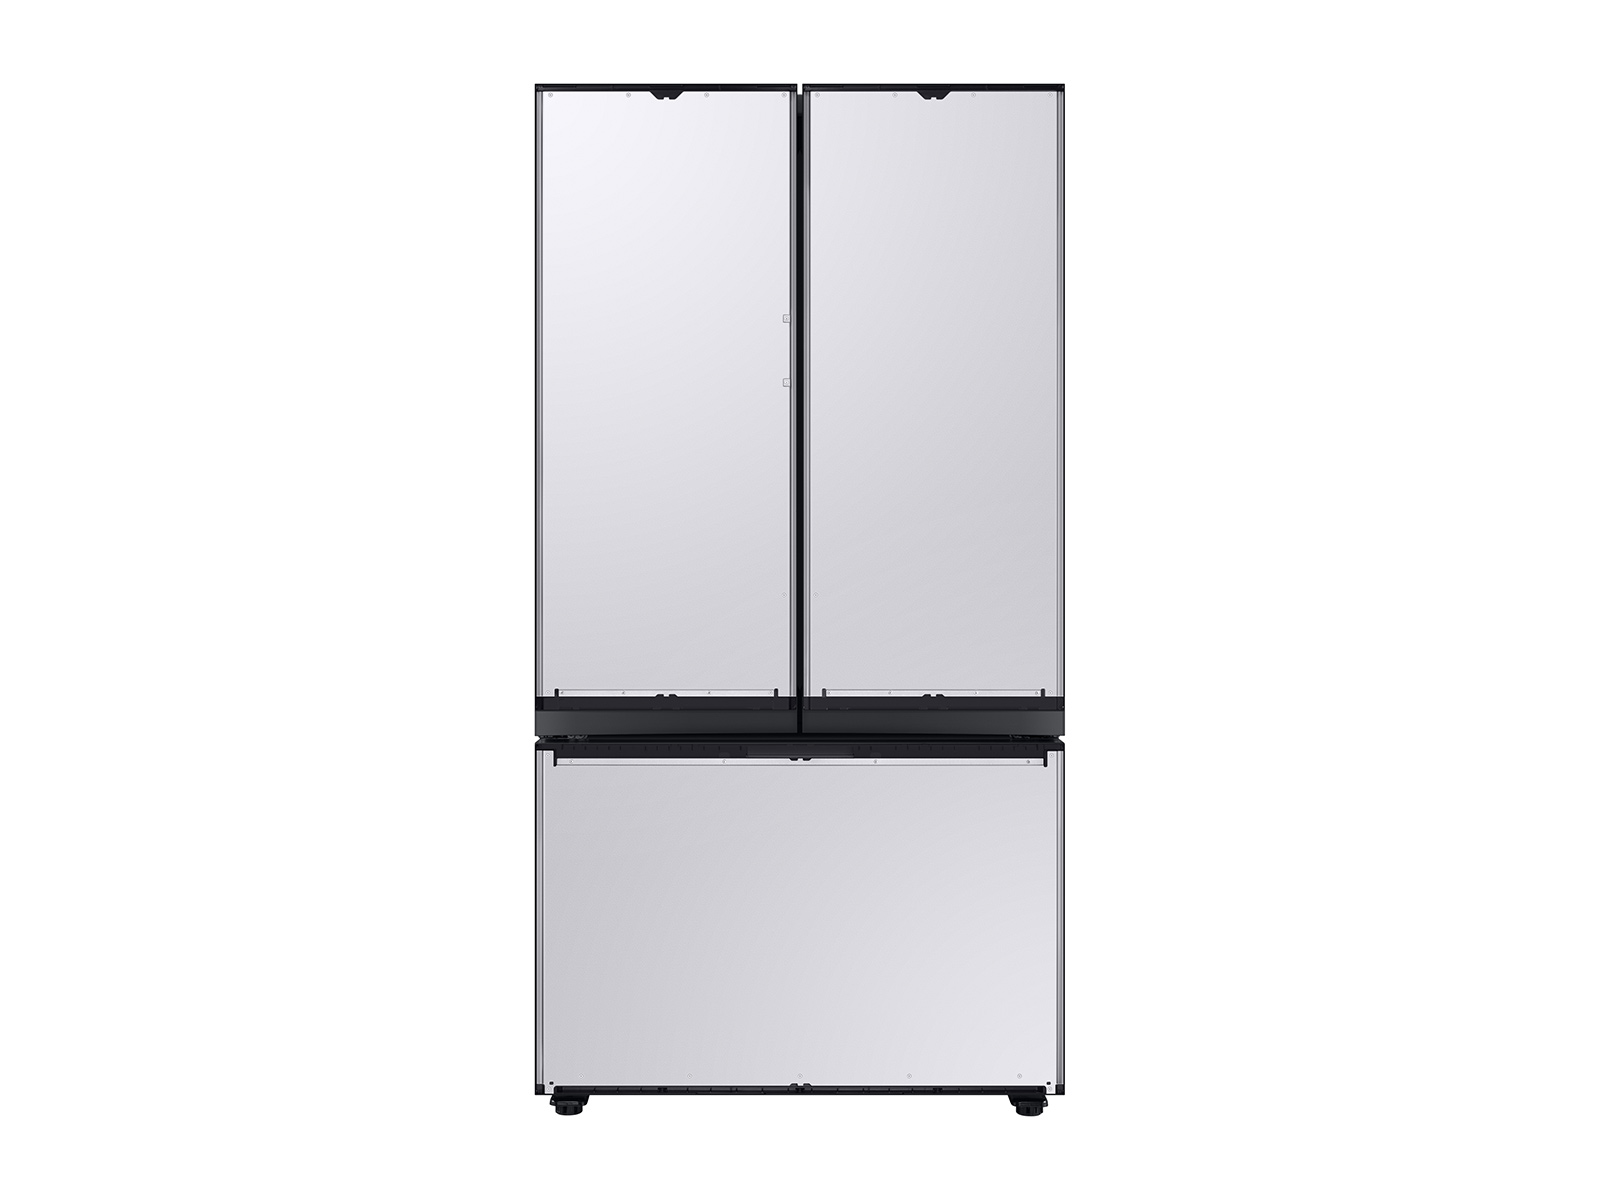 Photos - Fridge Samsung Bespoke 3-Door French Door Refrigerator  with AutoFill (30 cu. ft.)